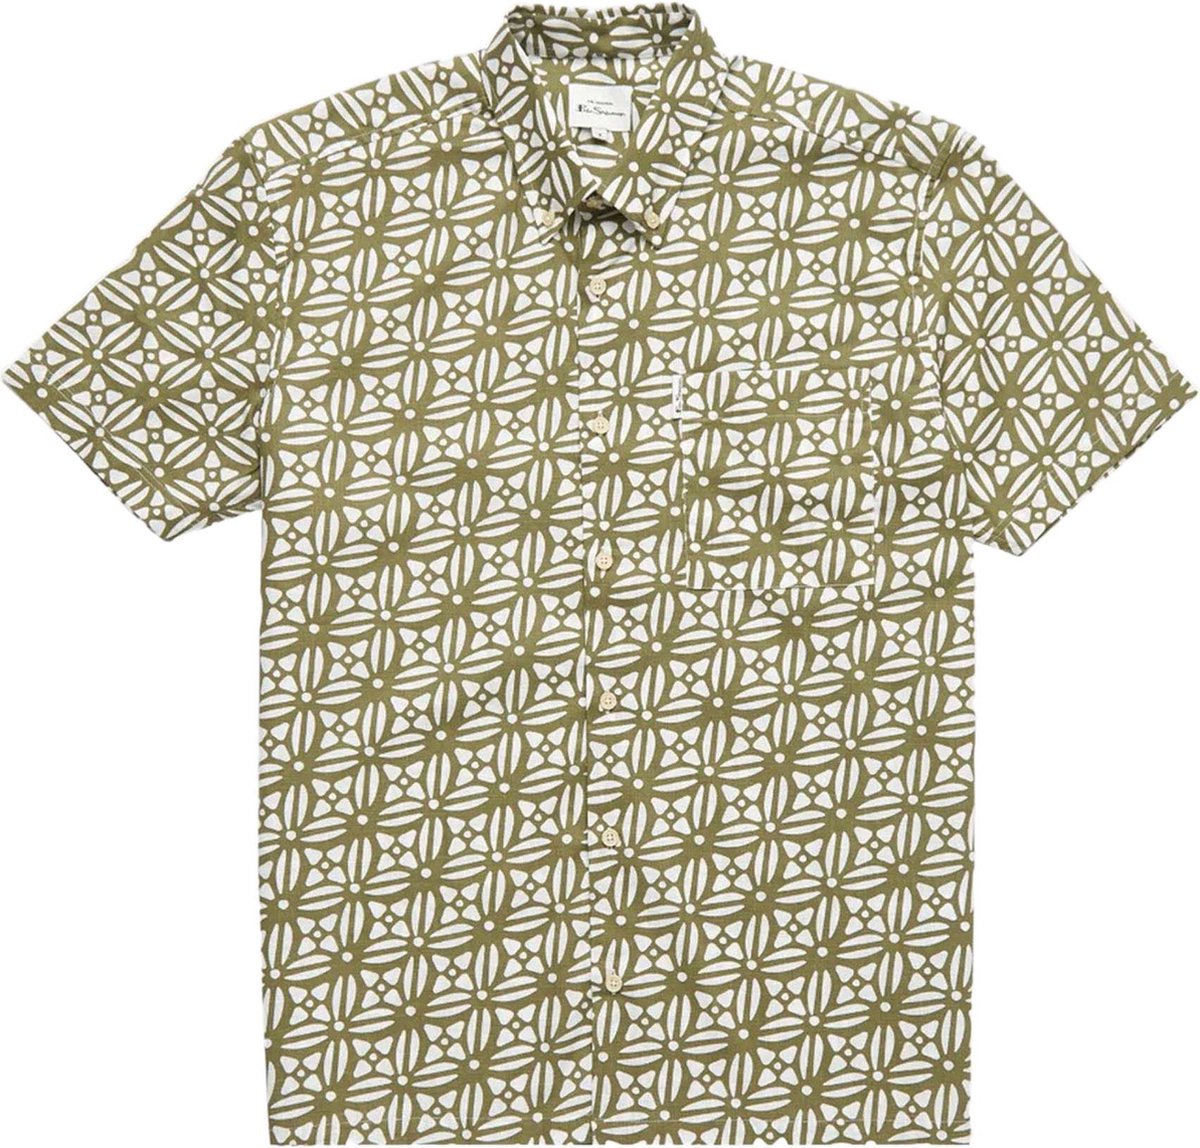 Ben Sherman Overhemd Print Katoen maat M Geo block korte mouw overhemden print